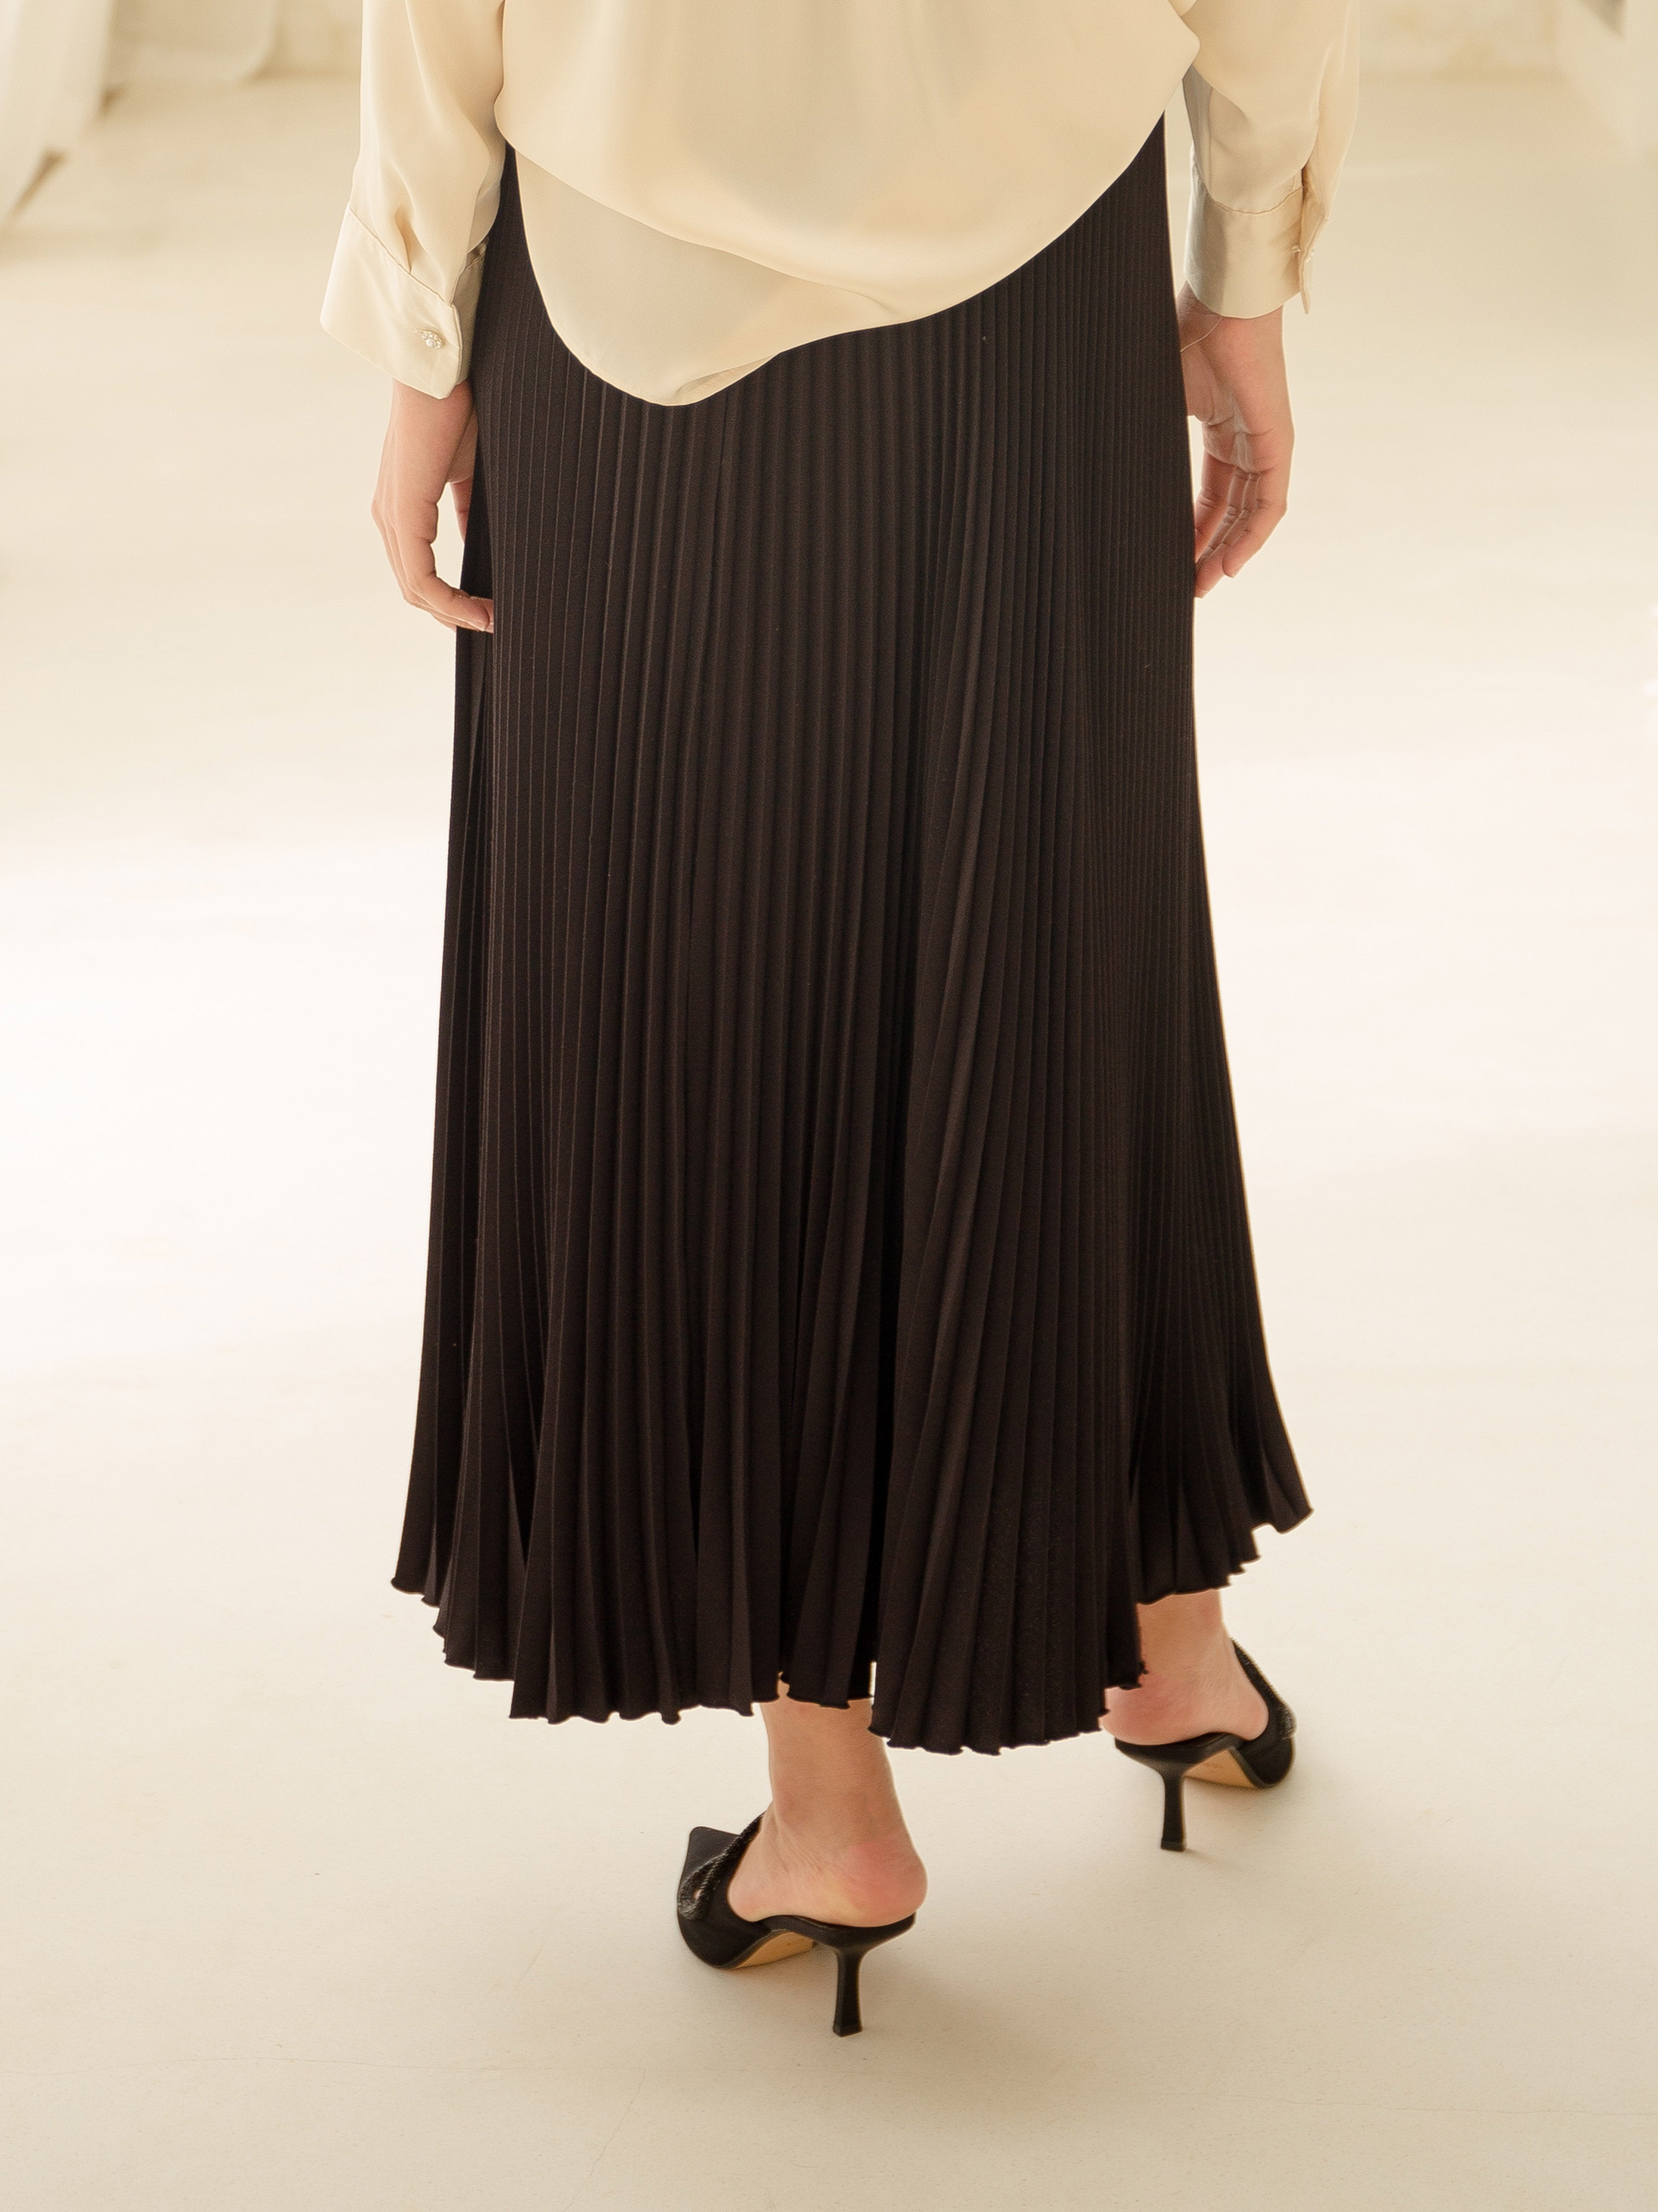 Vania Pleats Skirt Black